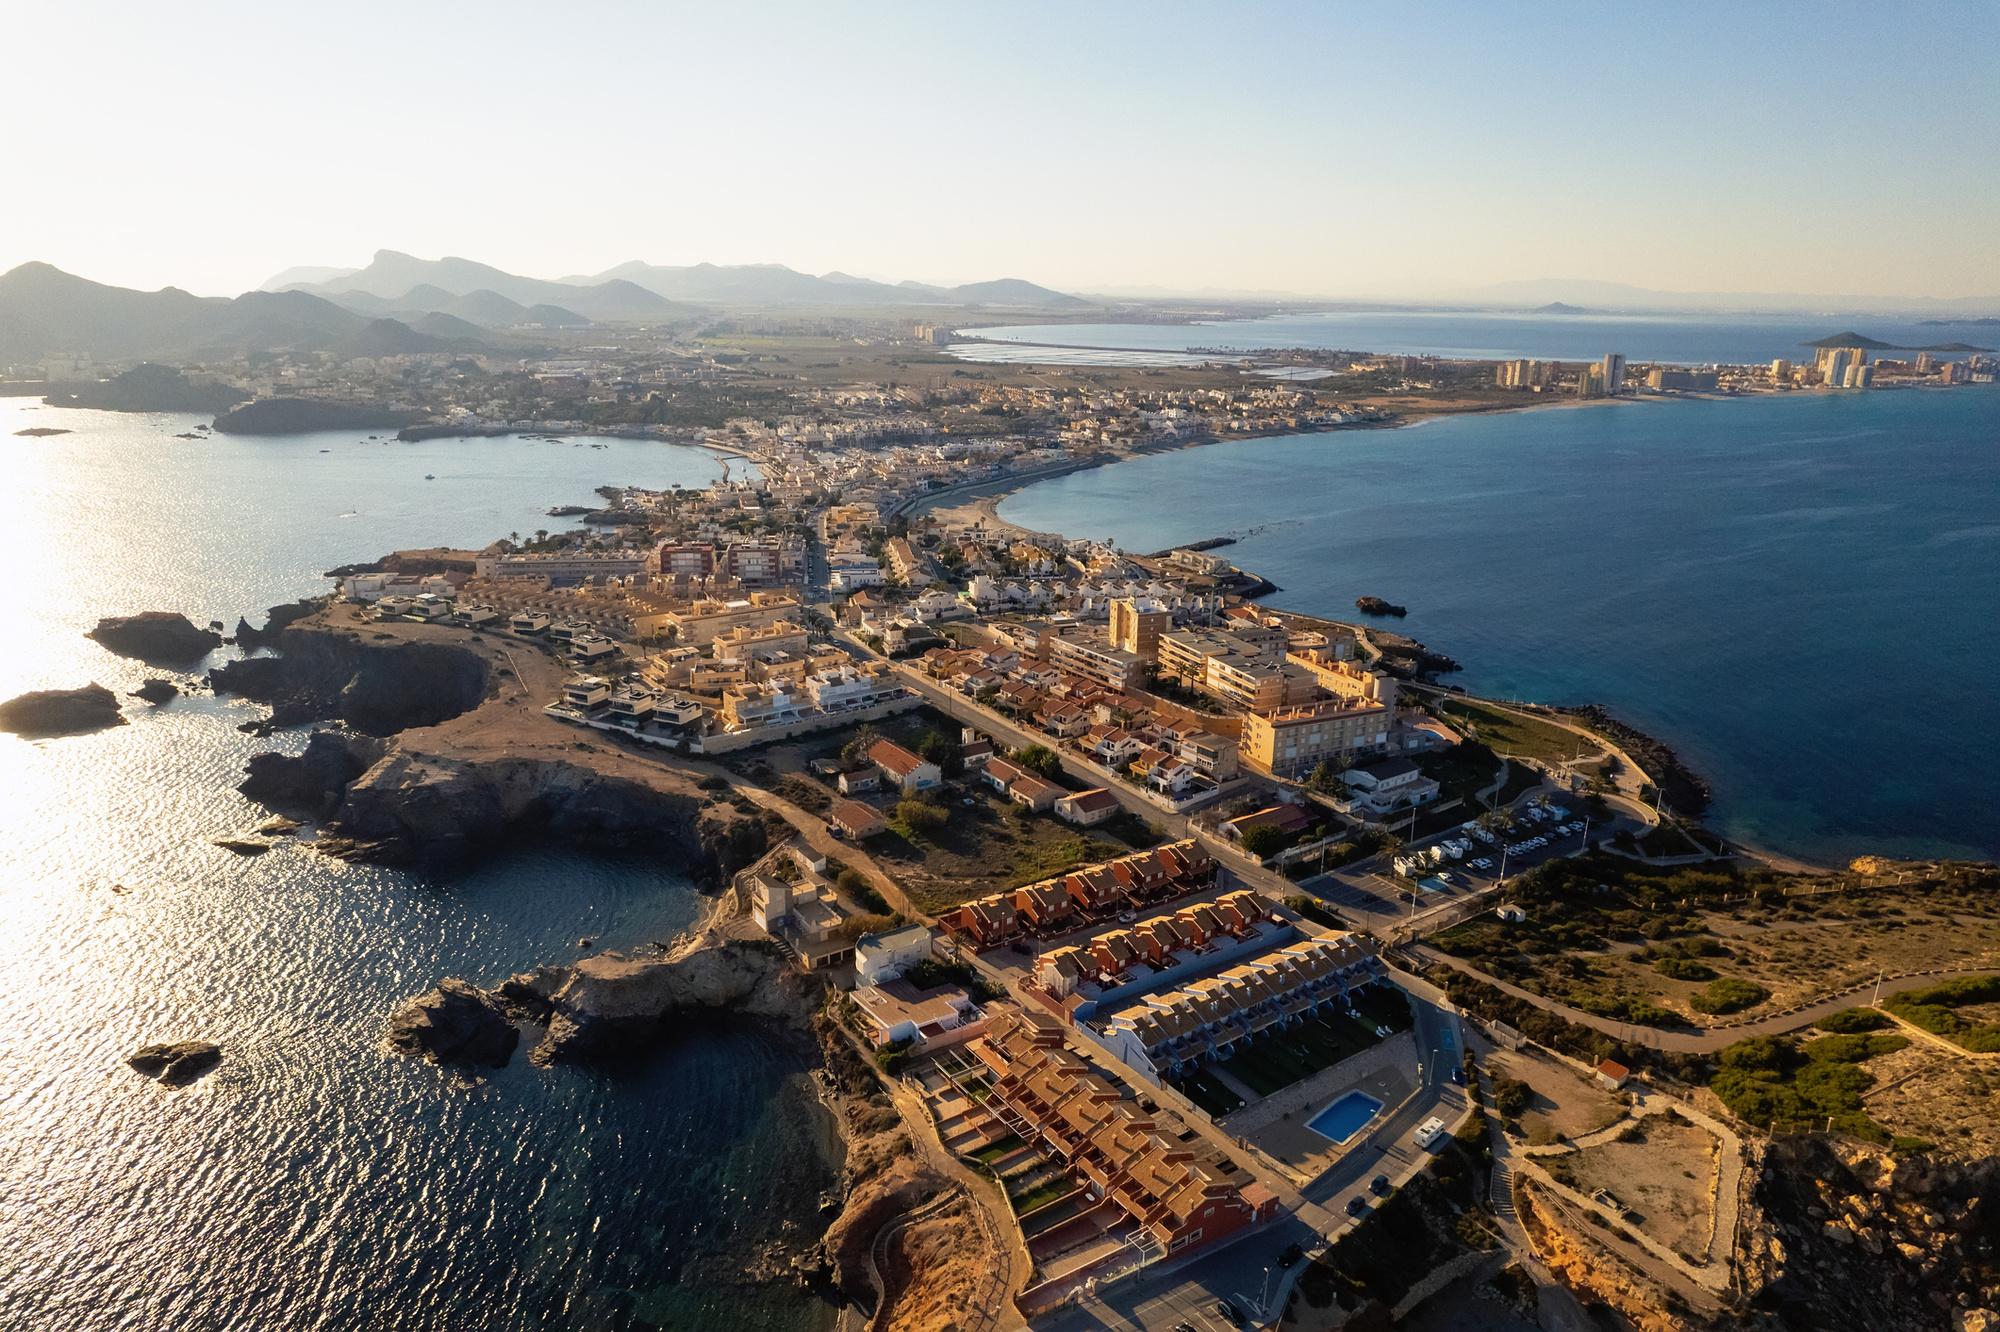 La laguna de agua salada española en peligro de extinción Mar Menor obtiene sus propios derechos